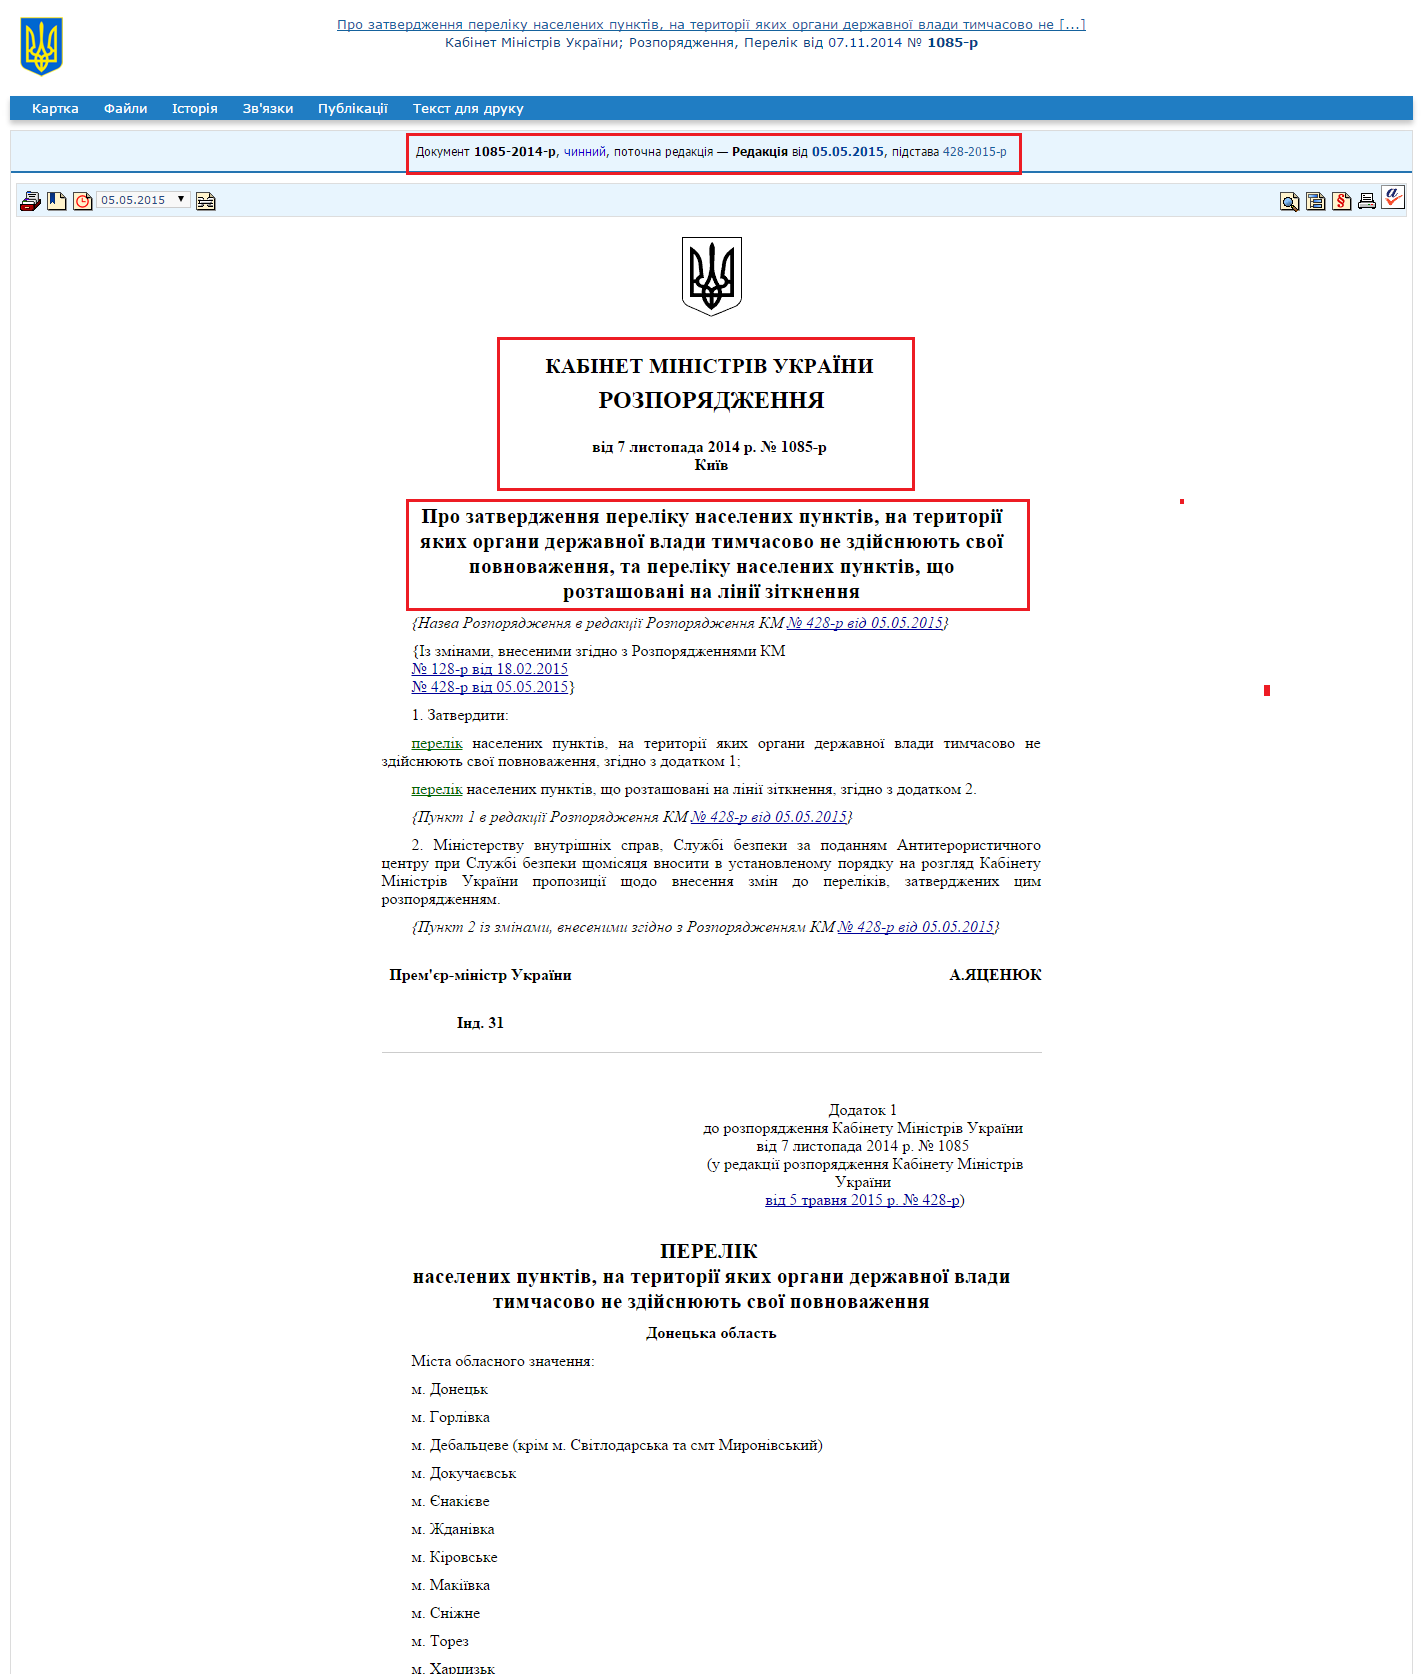 http://zakon2.rada.gov.ua/laws/show/1085-2014-%D1%80